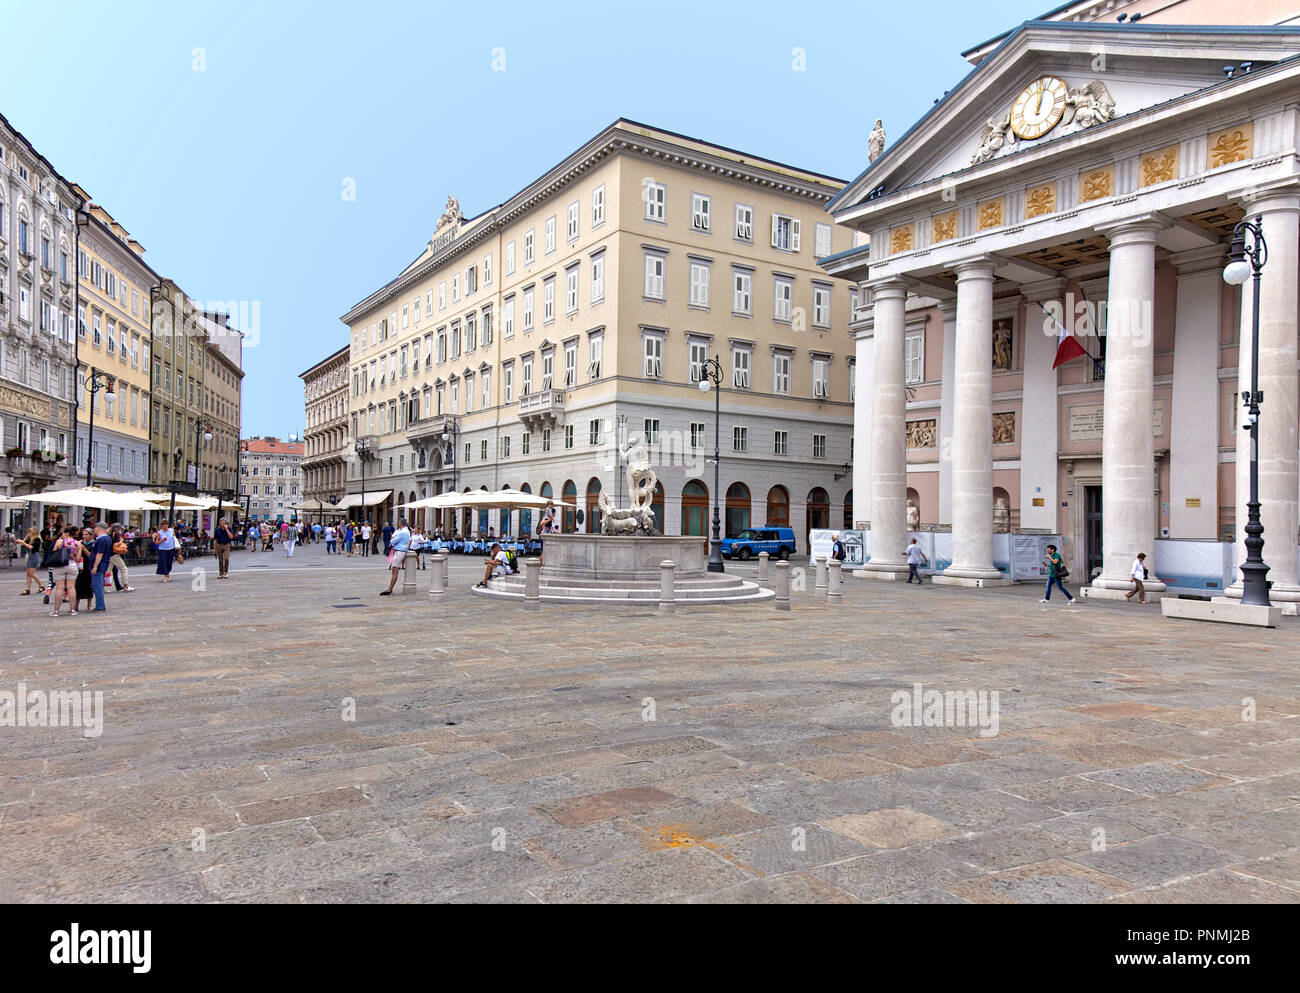 Le Palazzo della Borsa (Stock Exchange) à Trieste, Italie (extrême droite), domine la place du même nom et les ancres d'une zone piétonne à Trieste. Banque D'Images